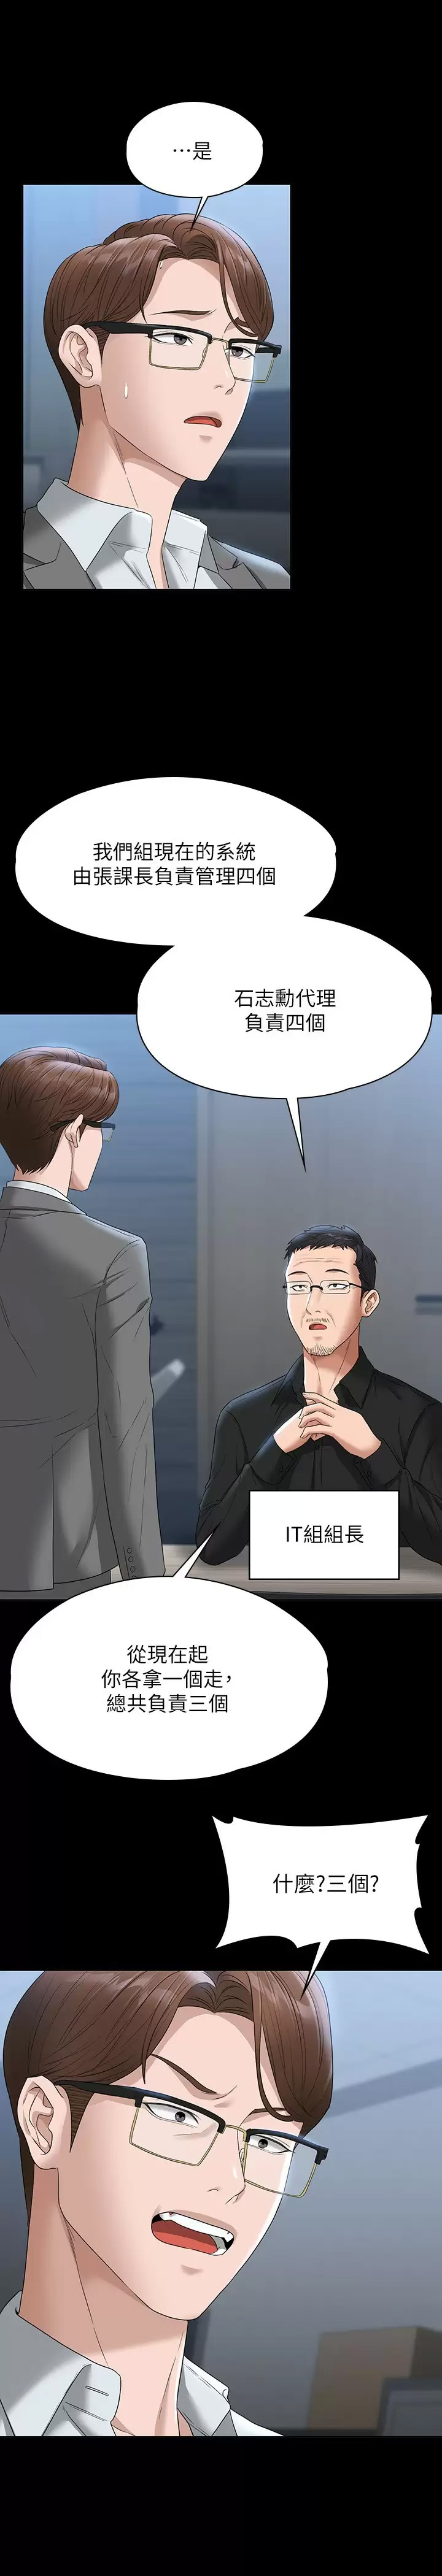 韩国污漫画 超級公務員 第53话 充满人妻味道的新婚房 21